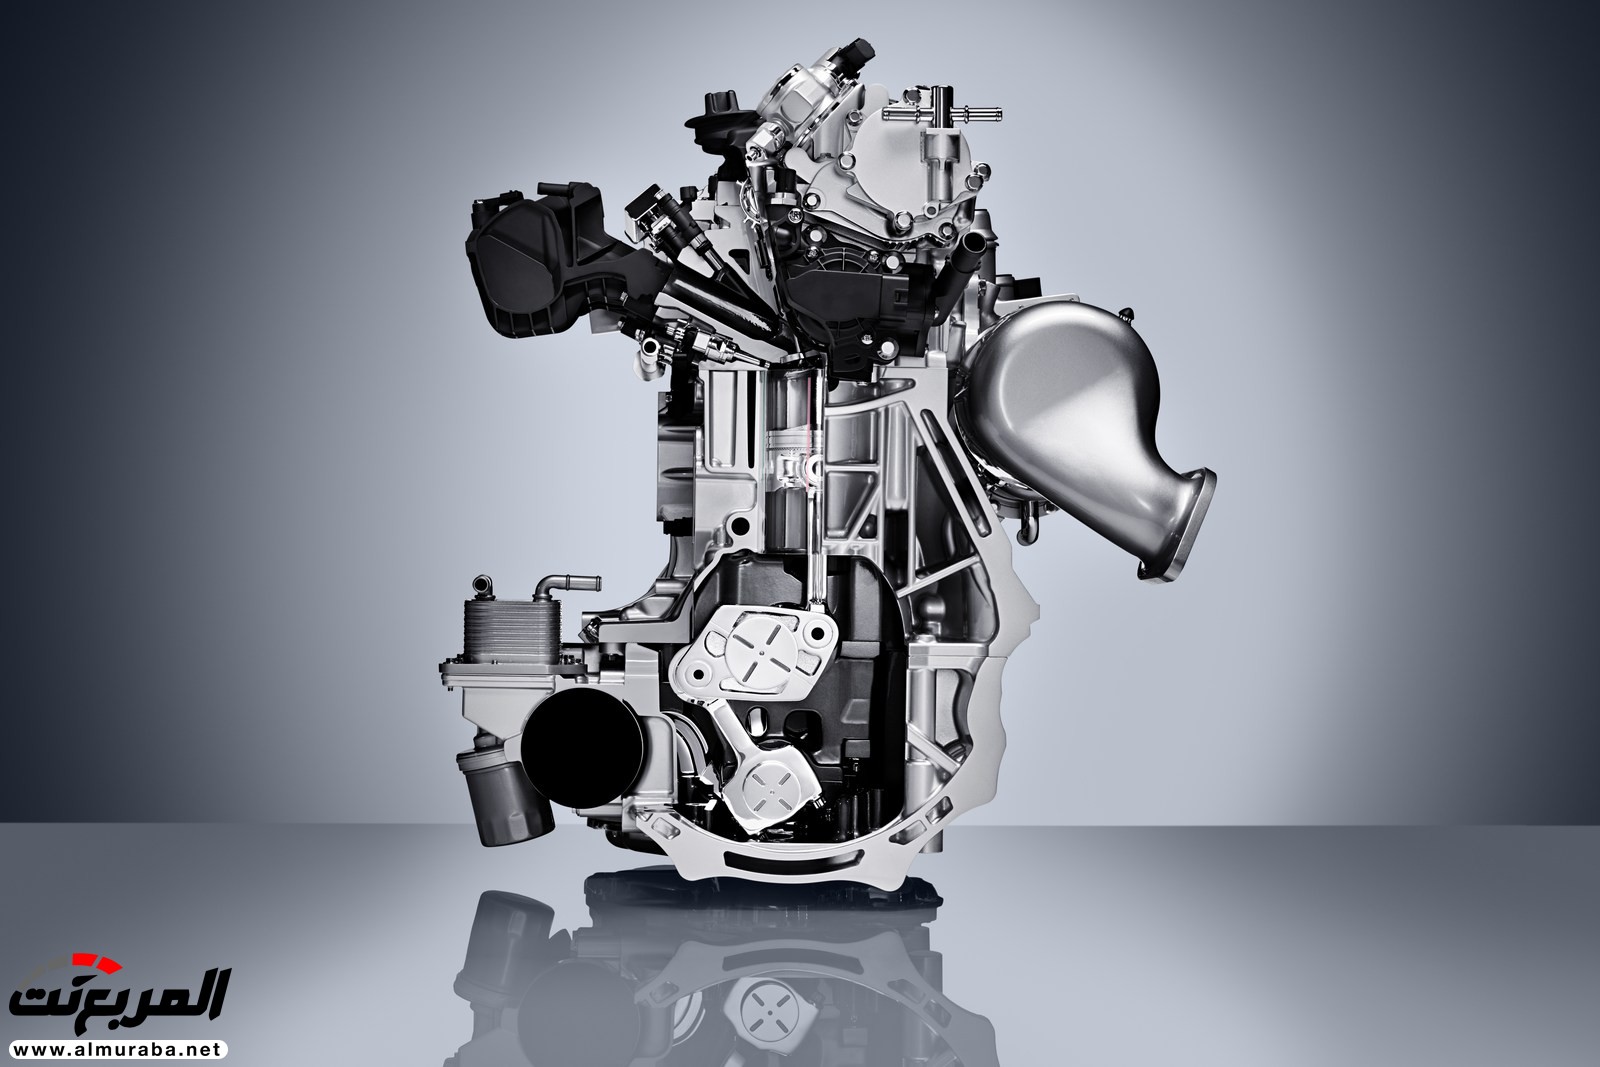 إنفينيتي QX50 الجديدة كلياً 2019 تظهر رسمياً بمحرك هو الأكثر تطوراً 9